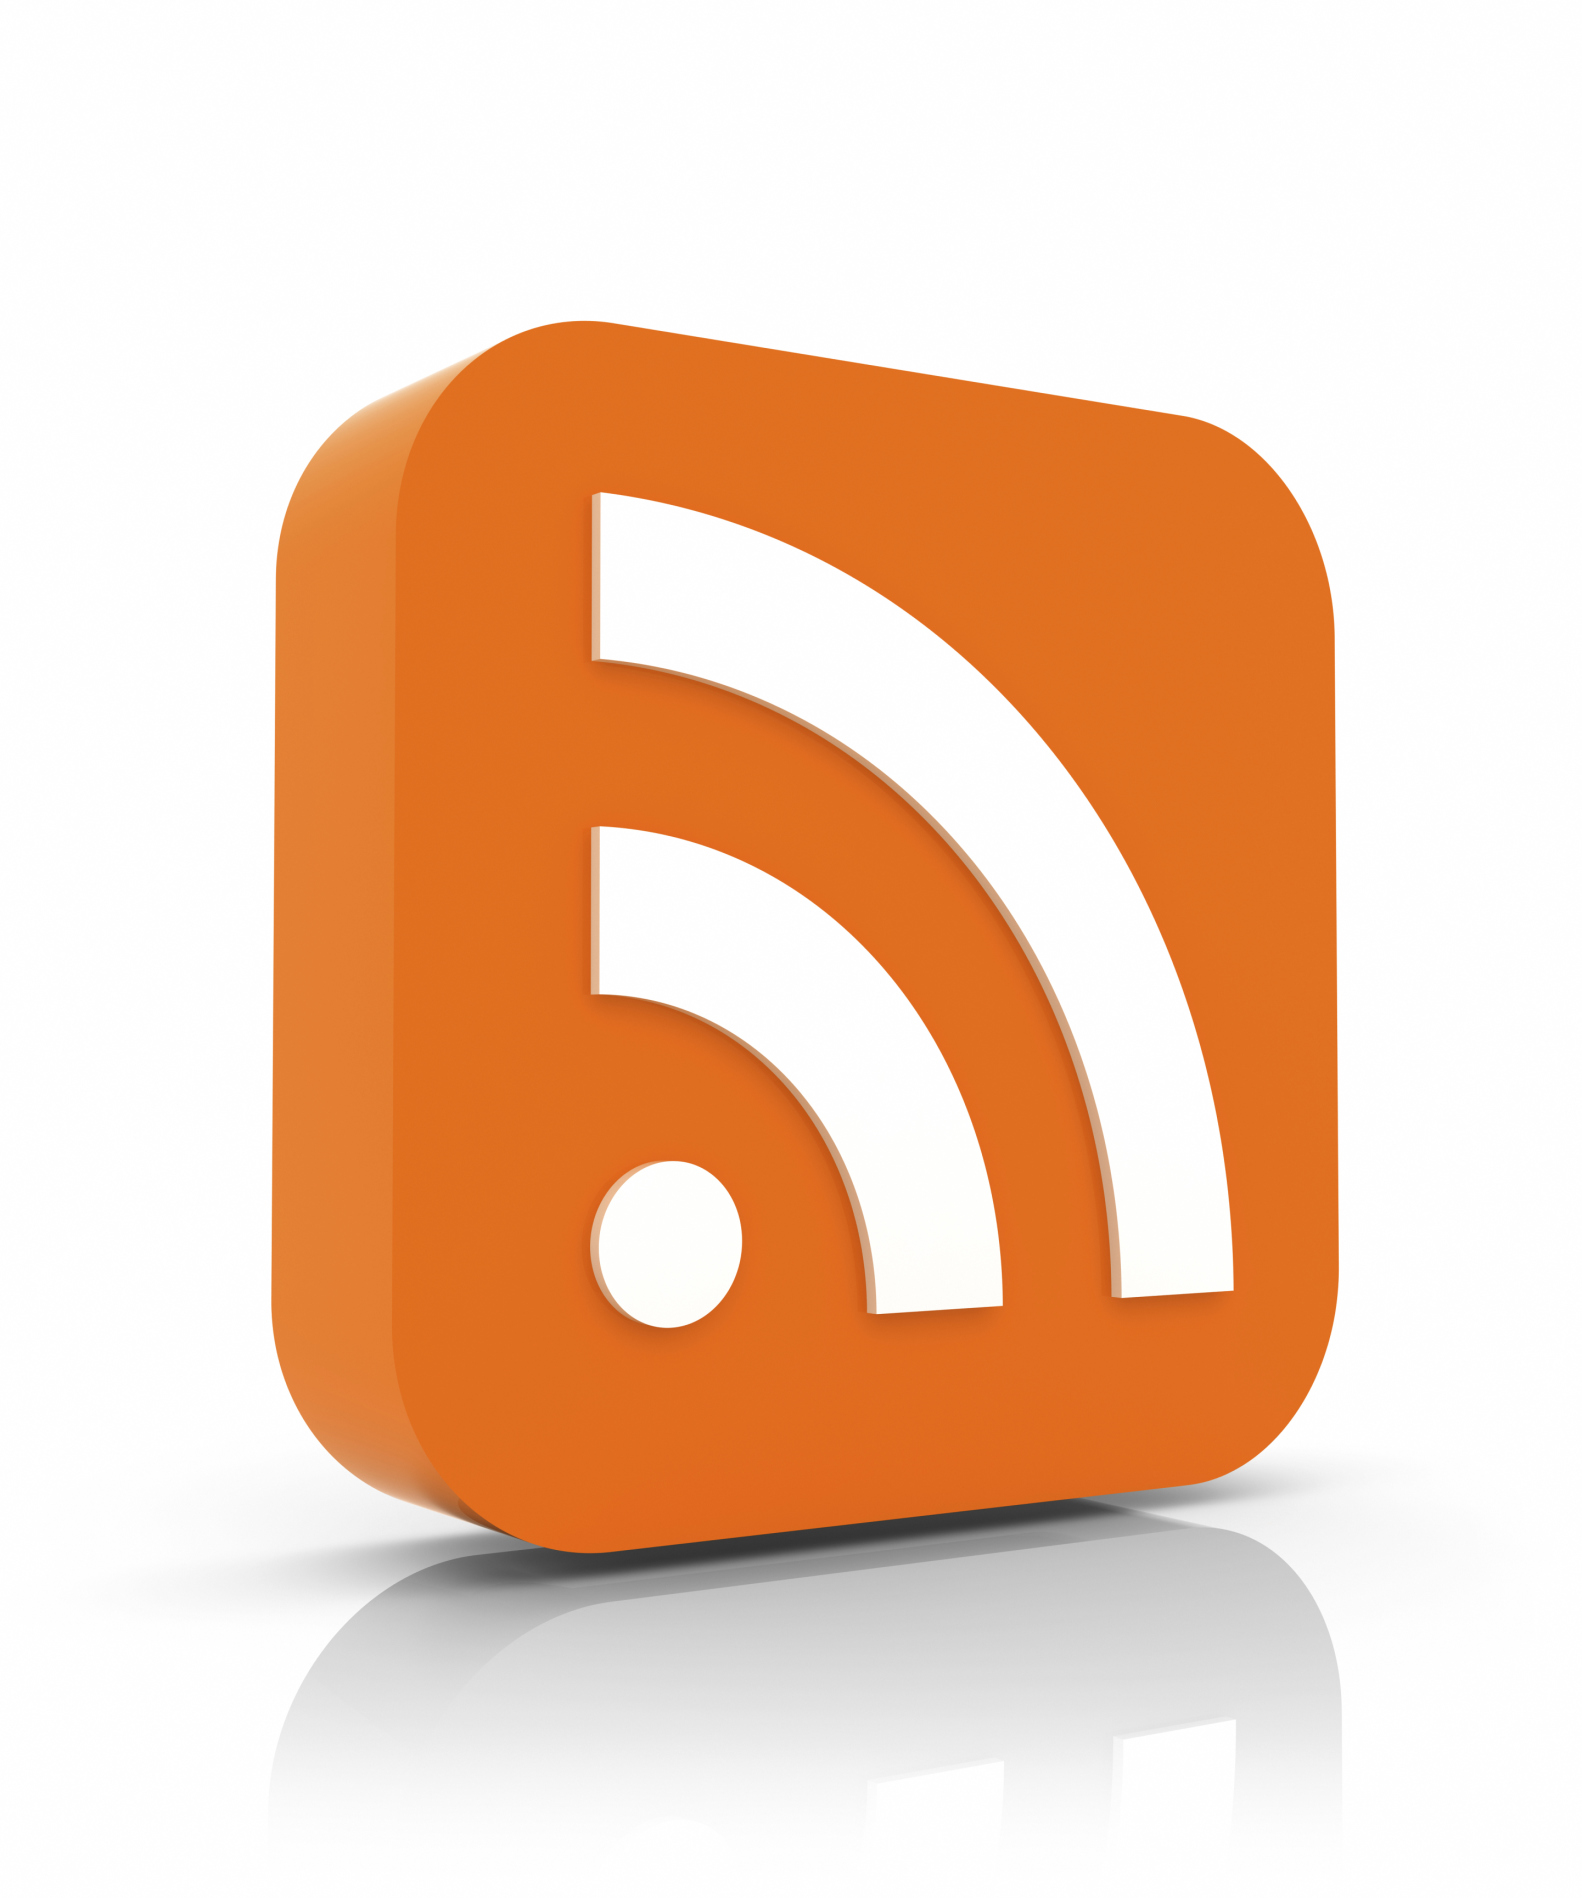 Acompanhe as notícias e comunicados do novo portal da UFTM por meio do feed RSS